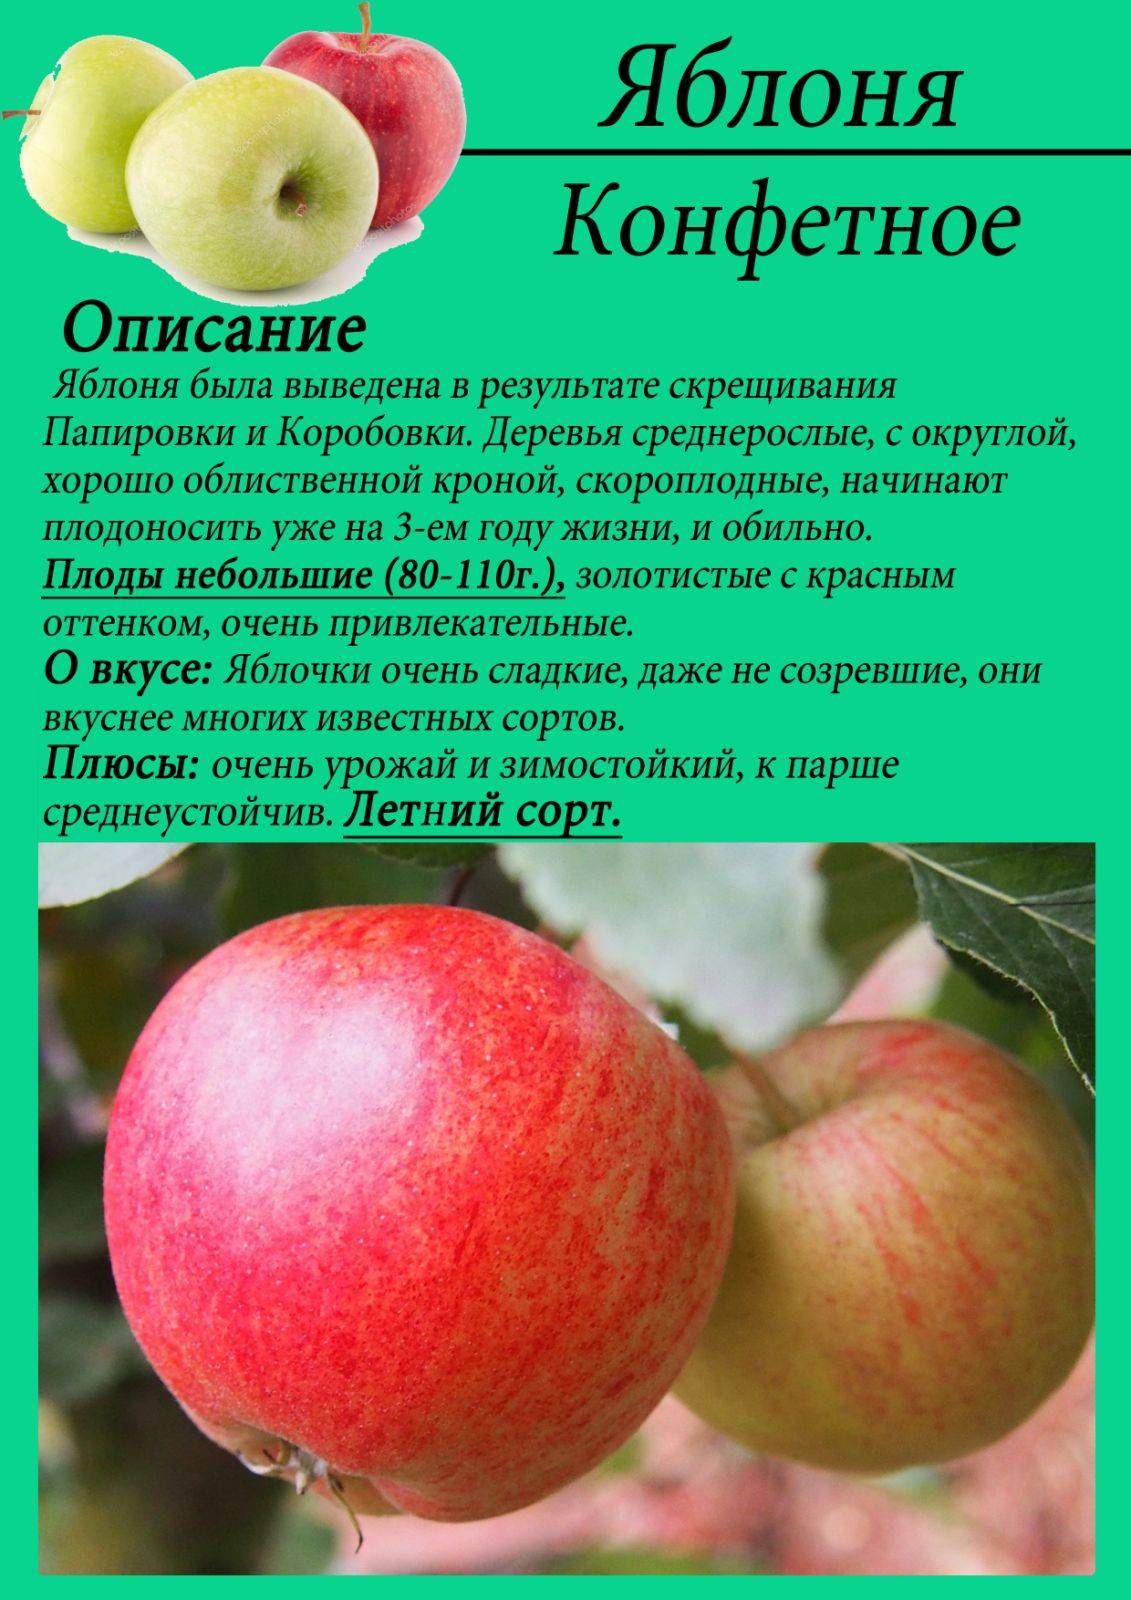 Описание сорта яблони мутсу. яблоня мутсу: описание, фото, где выращивают, отзывы